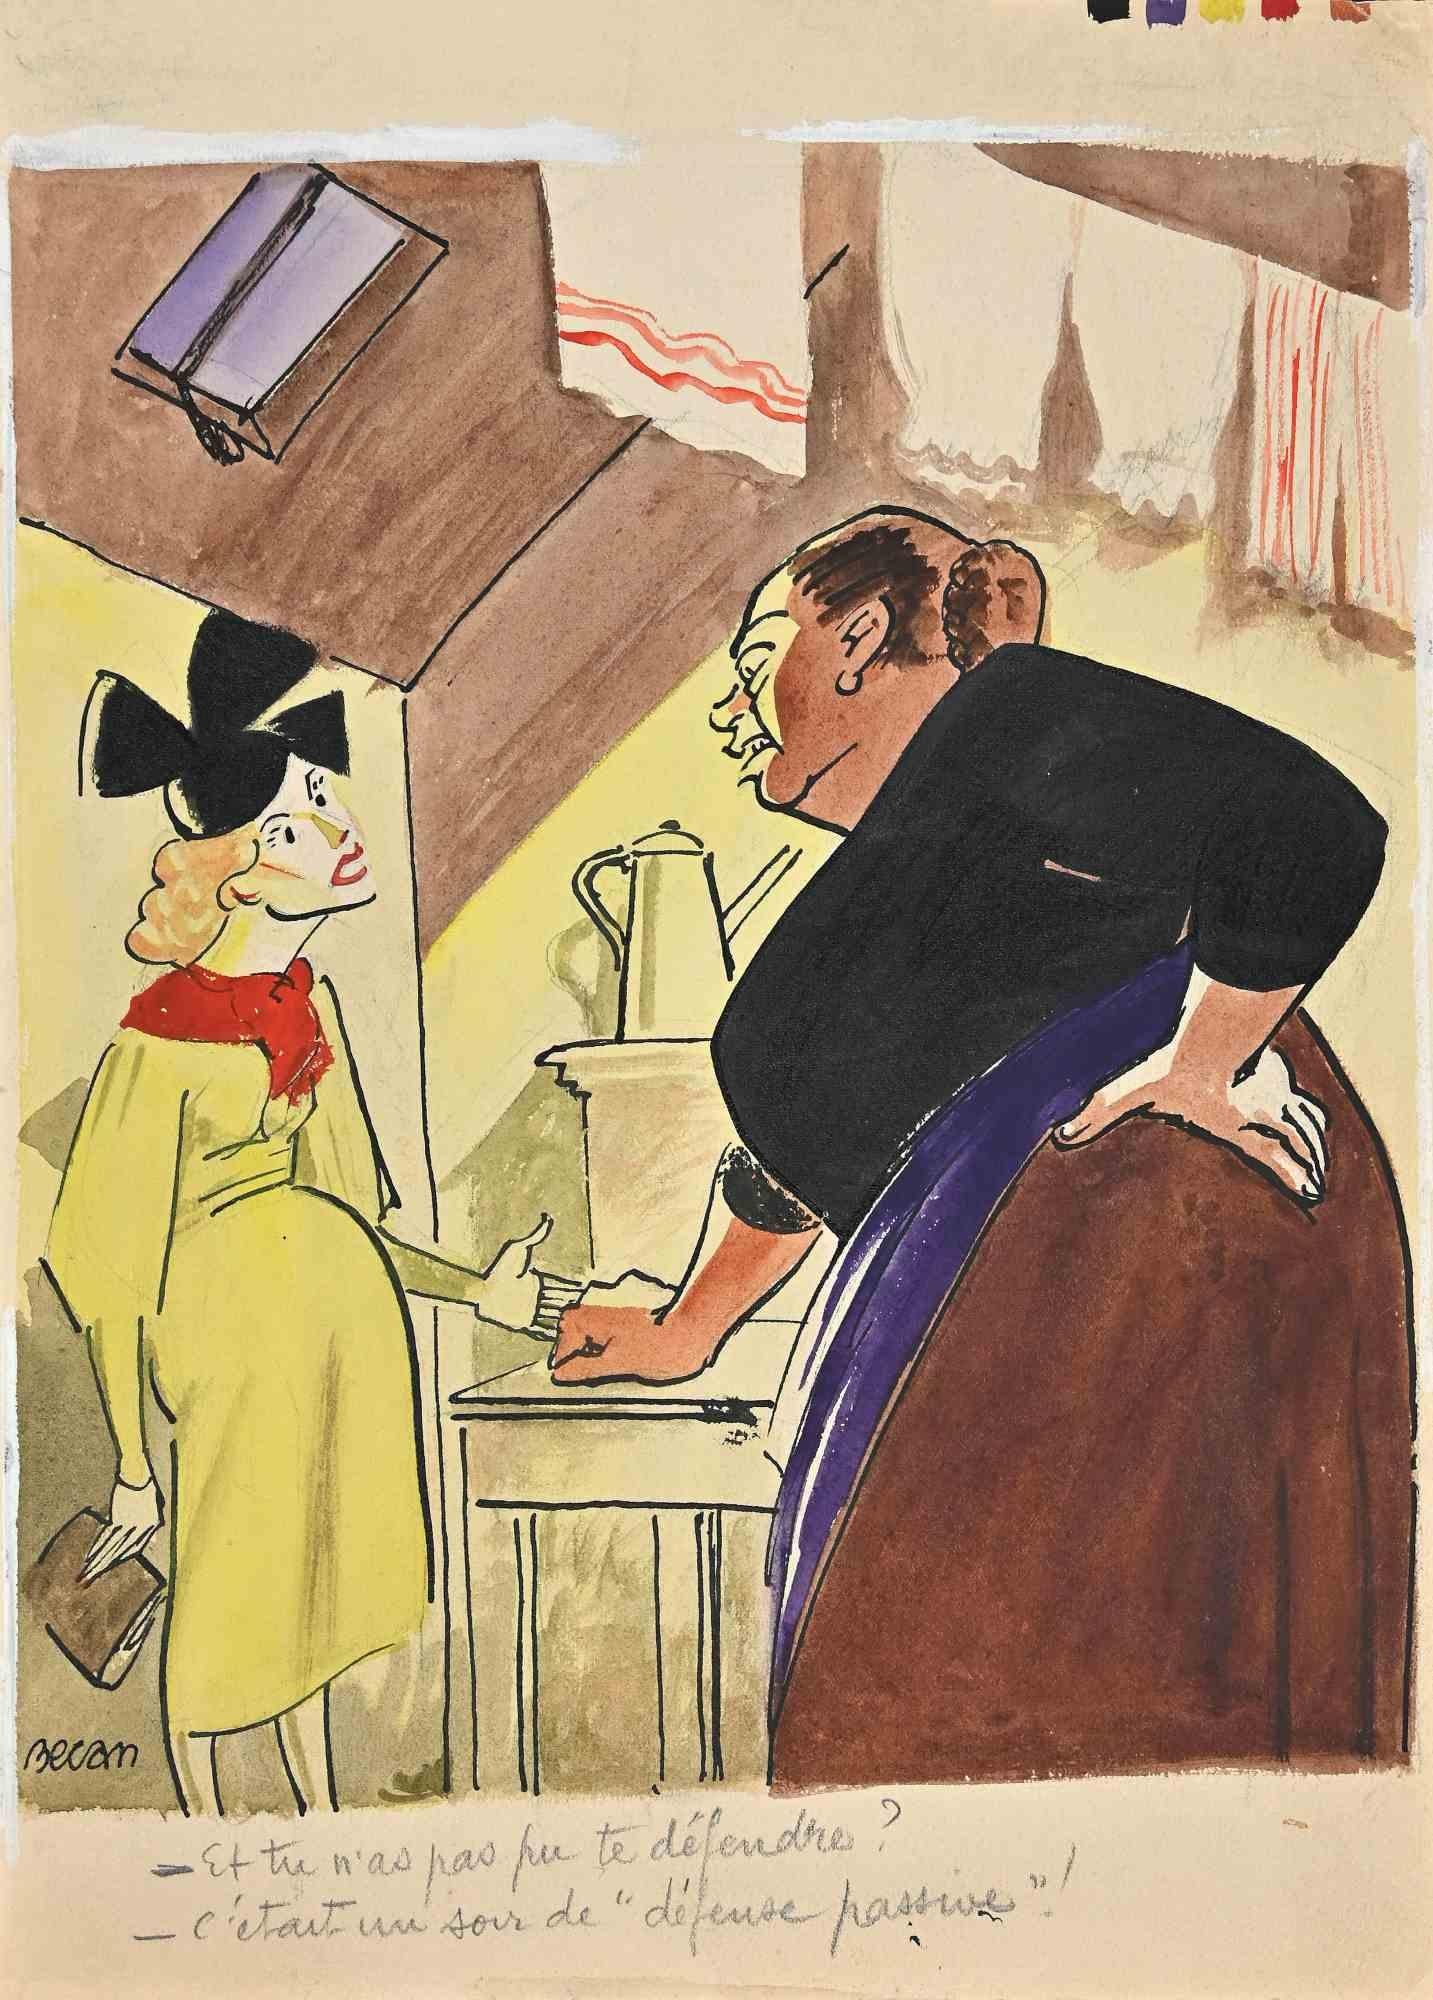 Das Gespräch zweier Frauen ist eine Zeichnung in Mischtechnik (Bleistift-Aquarell-Tempera), die in den 1920er Jahren von Bernard Bécan (1890-1943) angefertigt wurde.

Handsigniert unten links.

In gutem Zustand.

Das Kunstwerk wird durch geschickte